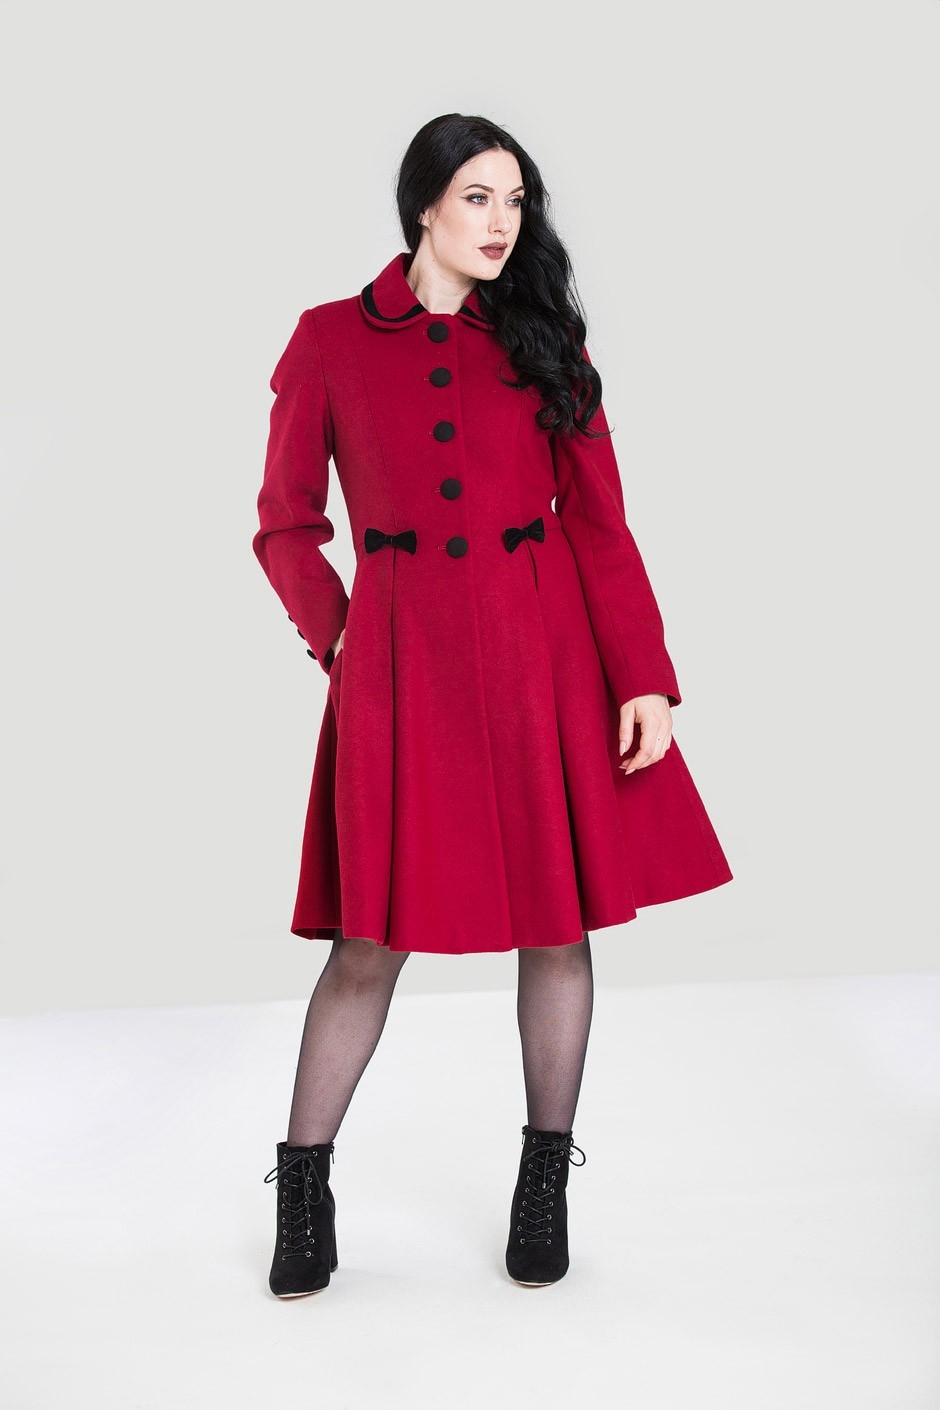 Olivia coat, rød: Lækker varm og feminin frakke sort med små sløjfer - fantastisk frakke, vi elsker, når der er gjort ud af det.